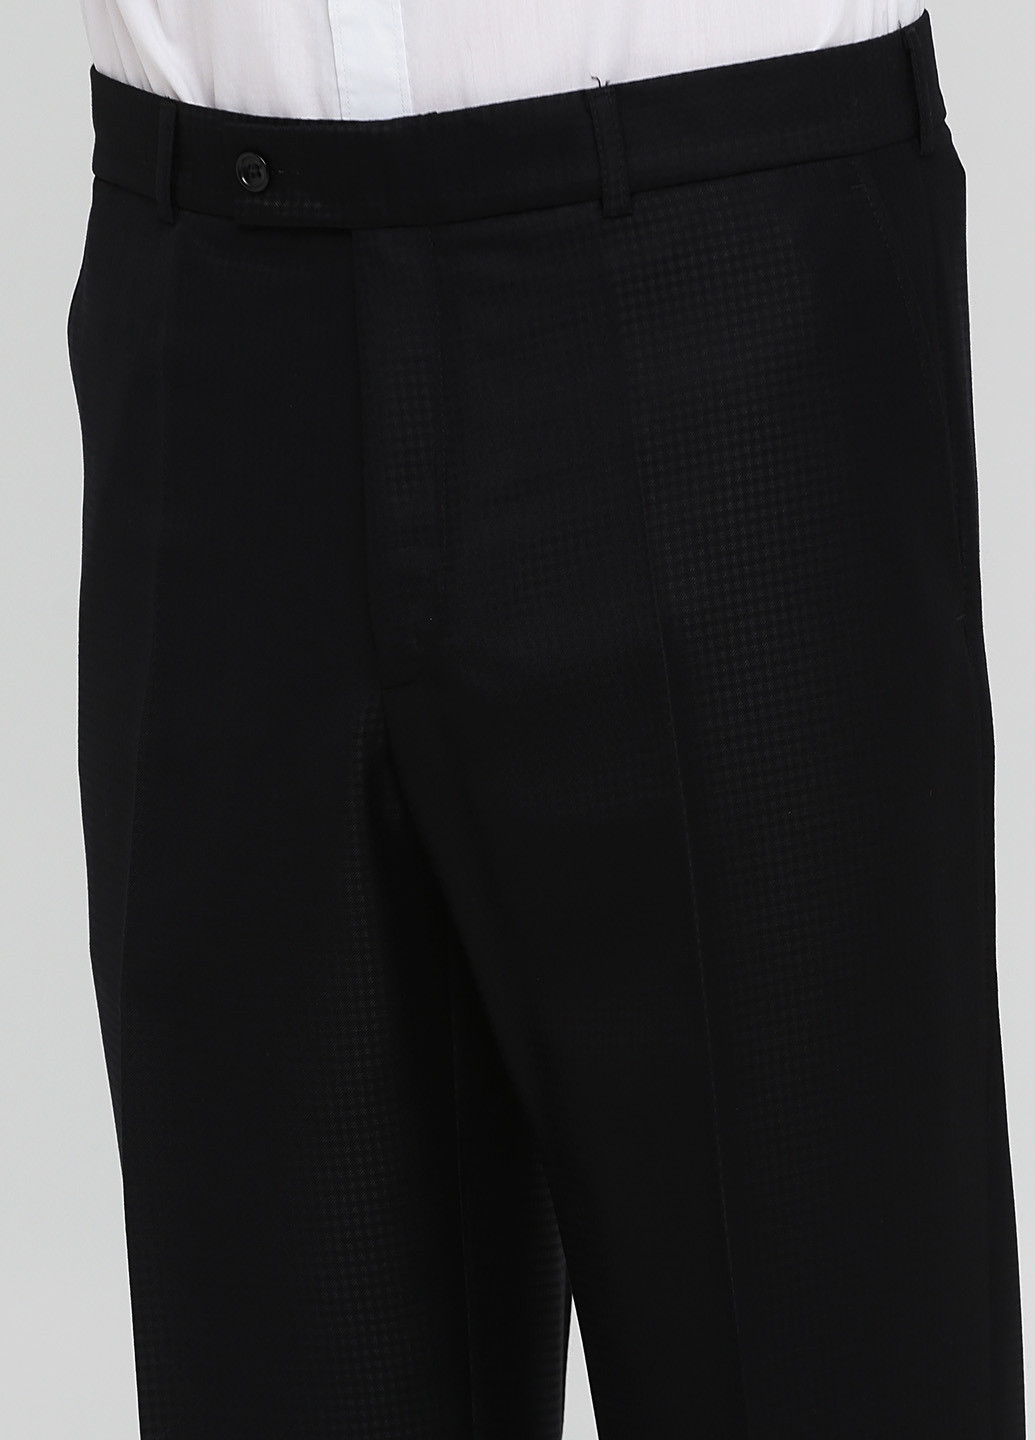 Черный демисезонный костюм (пиджак, брюки) брючный Federico Cavallini